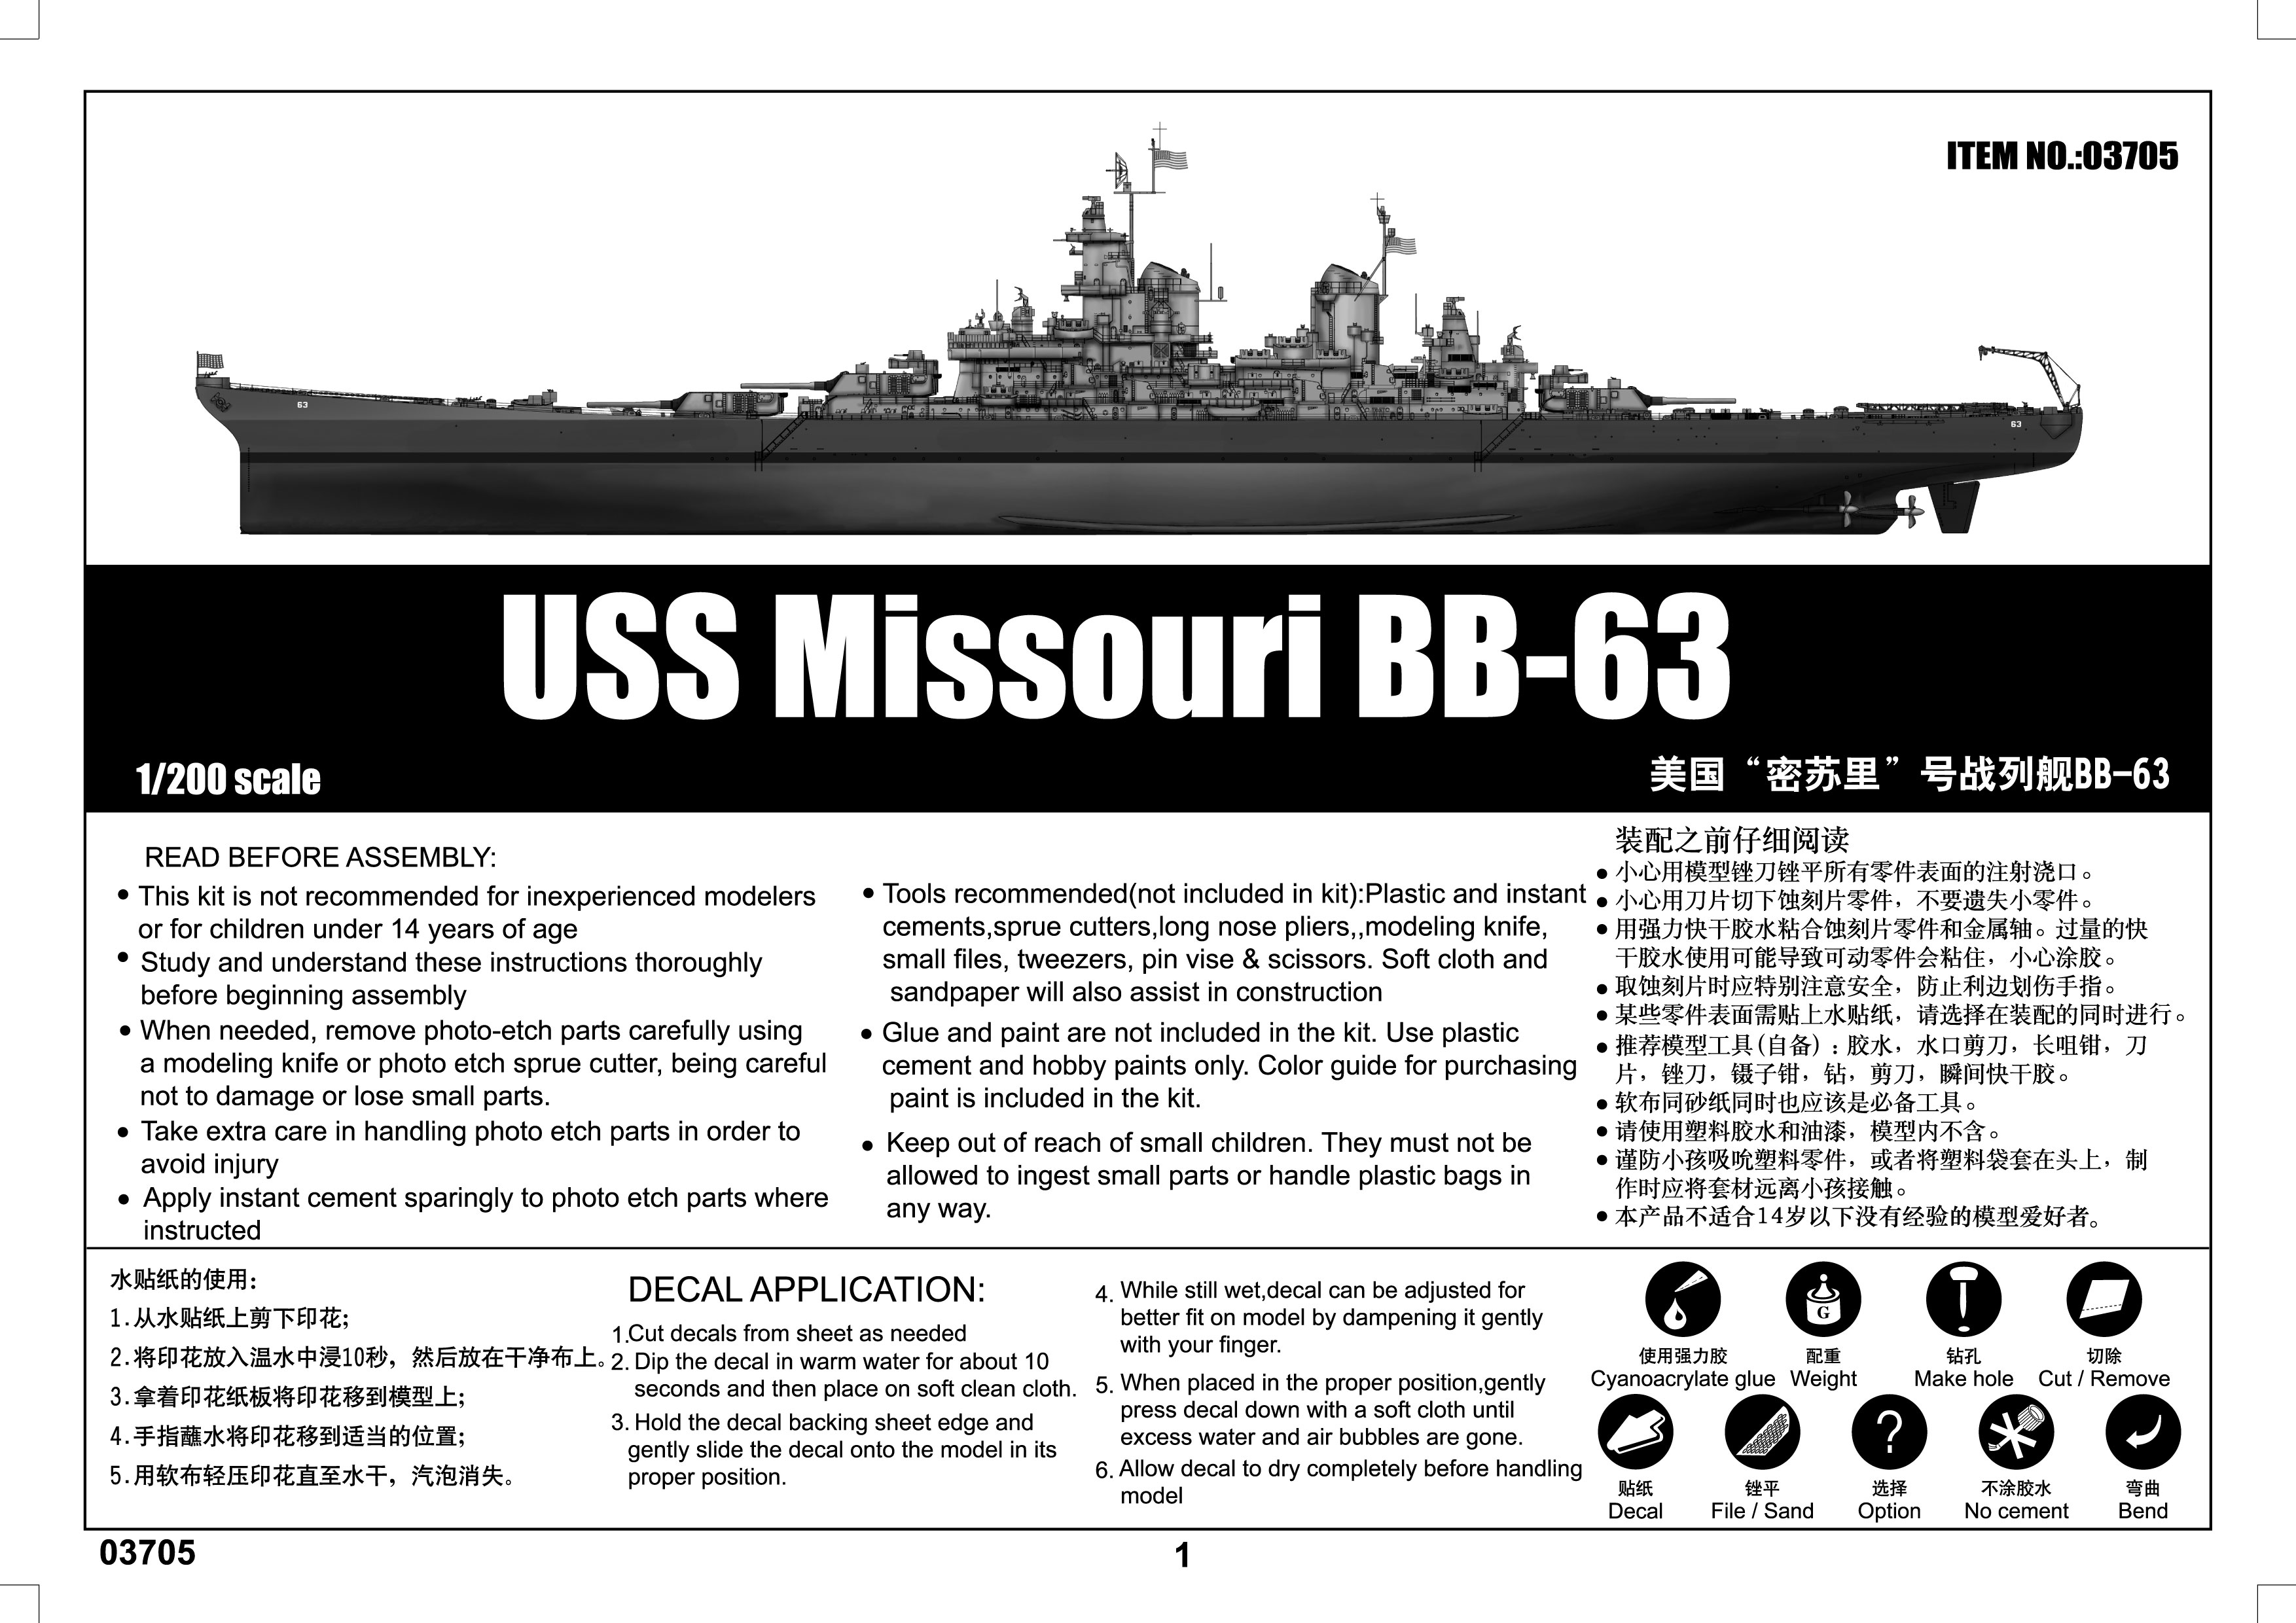 USS Missouri BB-63 (4)